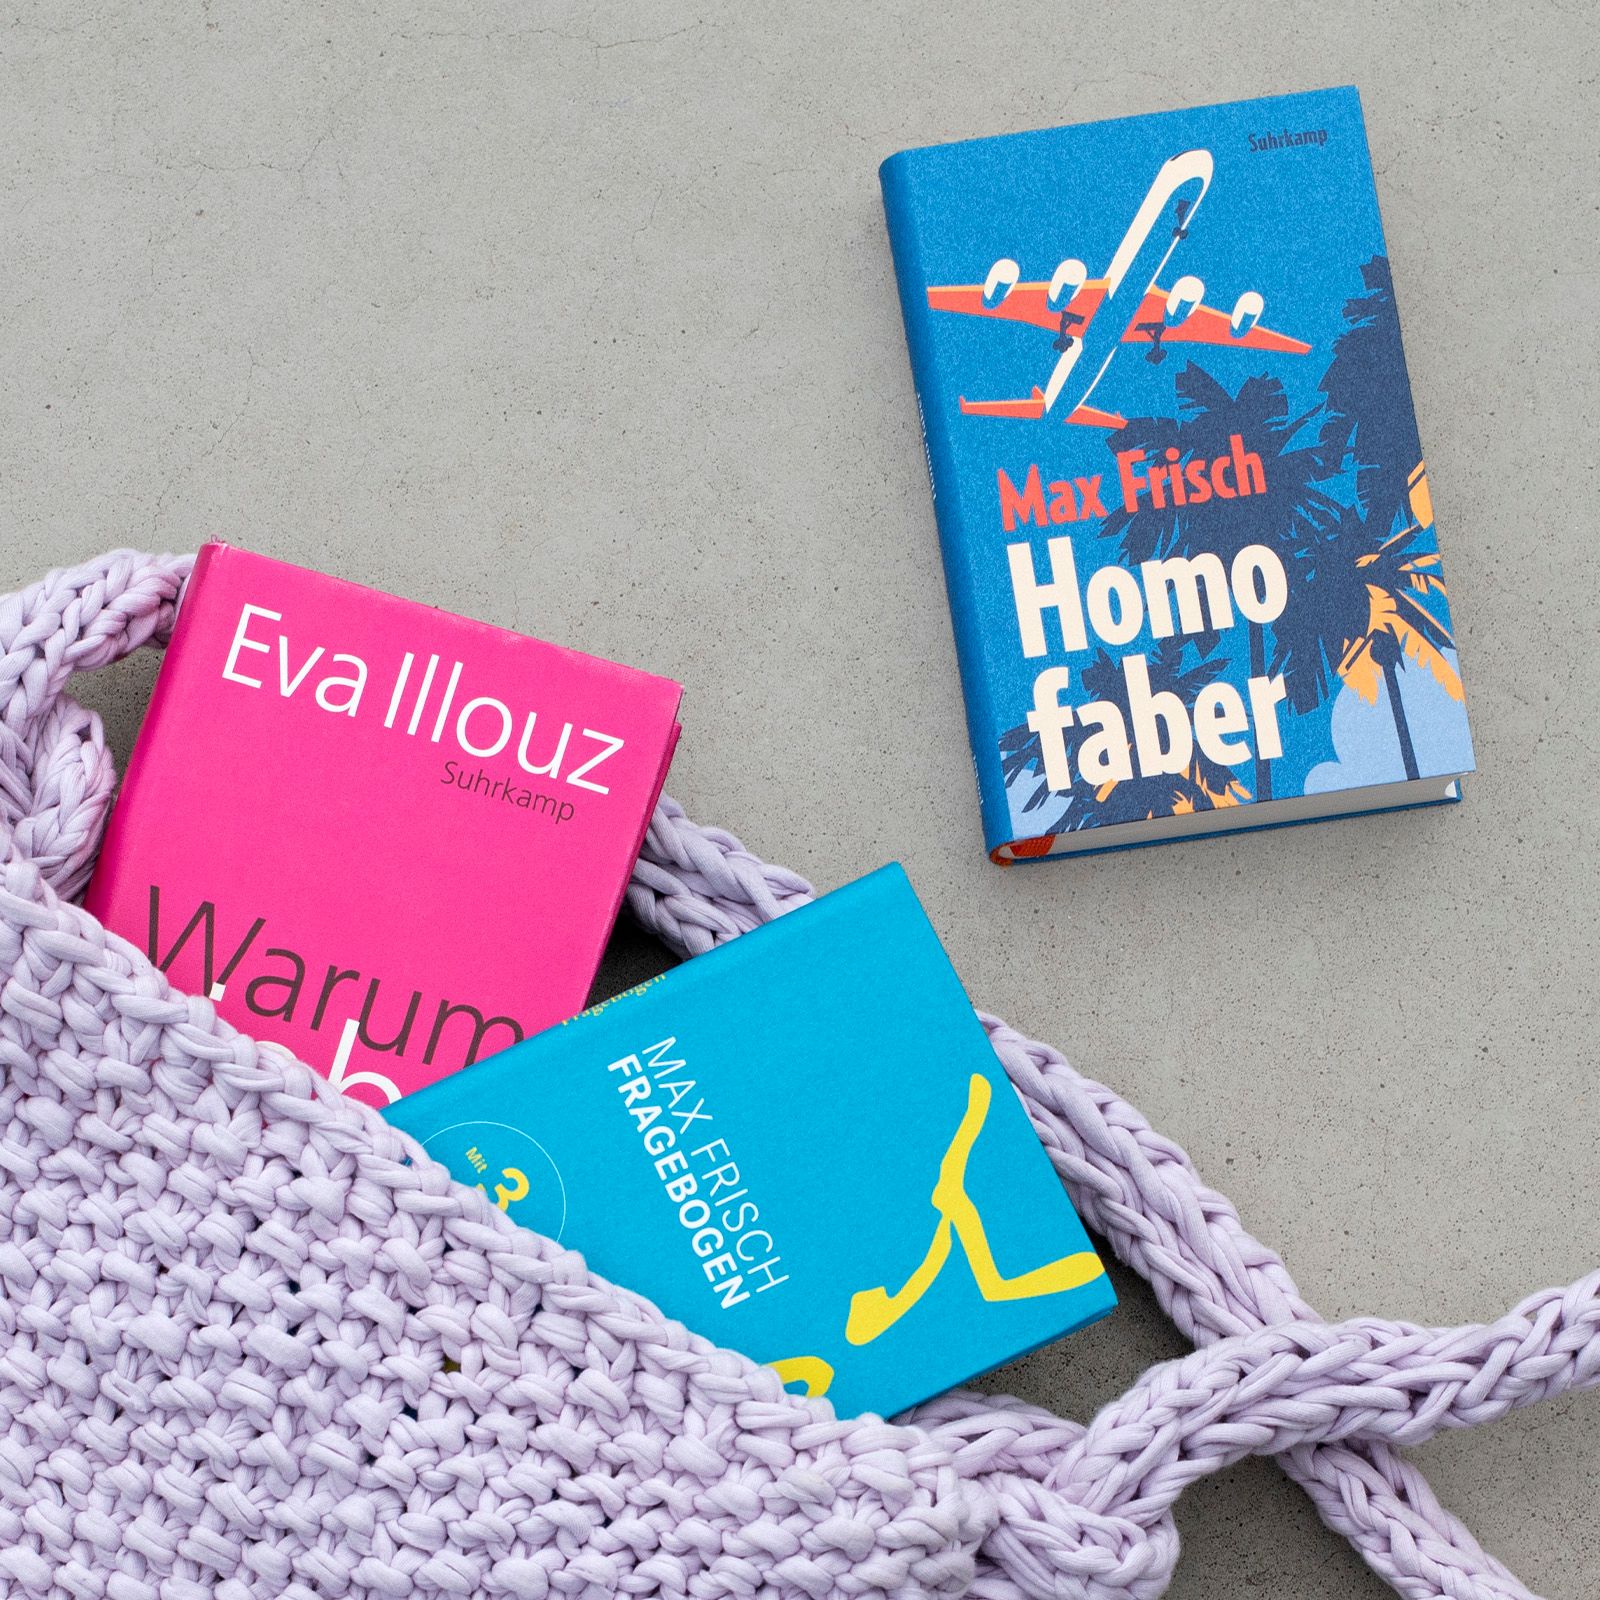 Tasche mit zwei Bänden den Büchern "Warum Liebe weh tut" von Eva Illouz, "Homo faber" von Max Frisch und "Fragebogen" von Max Frisch in Ausgaben der Reihe Suhrkamp Pocket